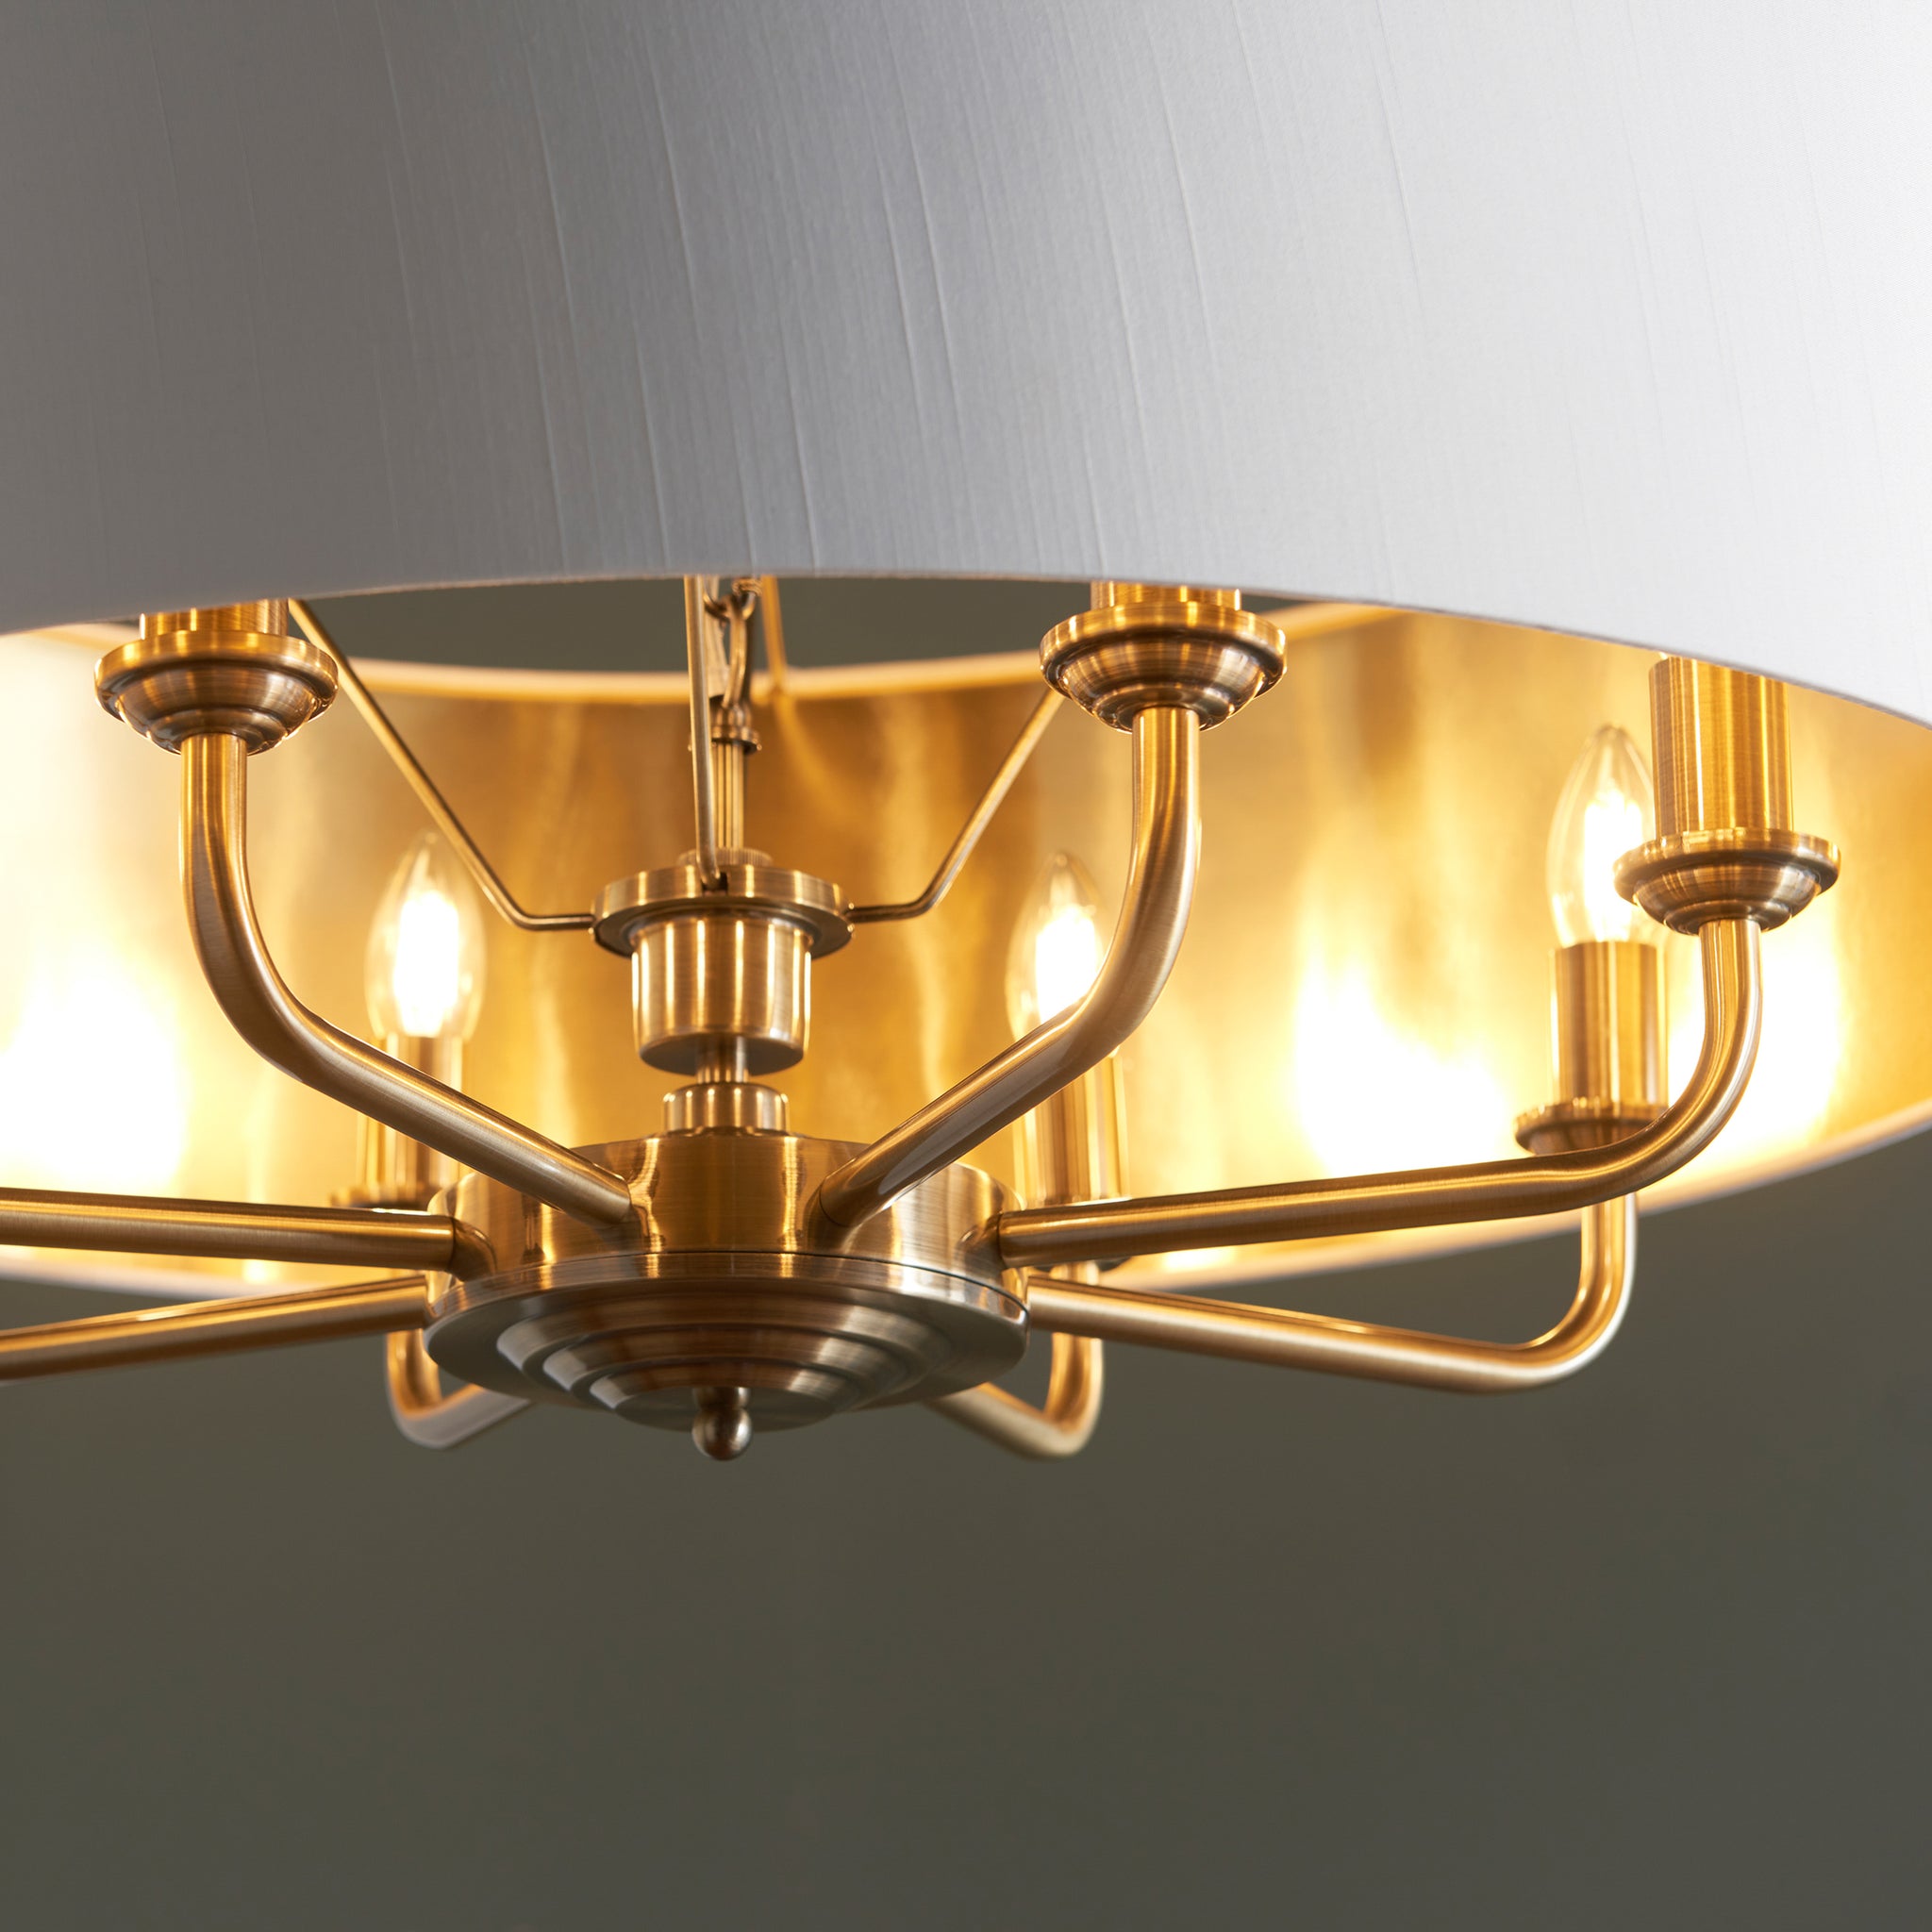 Monclere 8 Light Pendant Light Antique Brass 70 Cm Diameter 55 173 Cm Drop